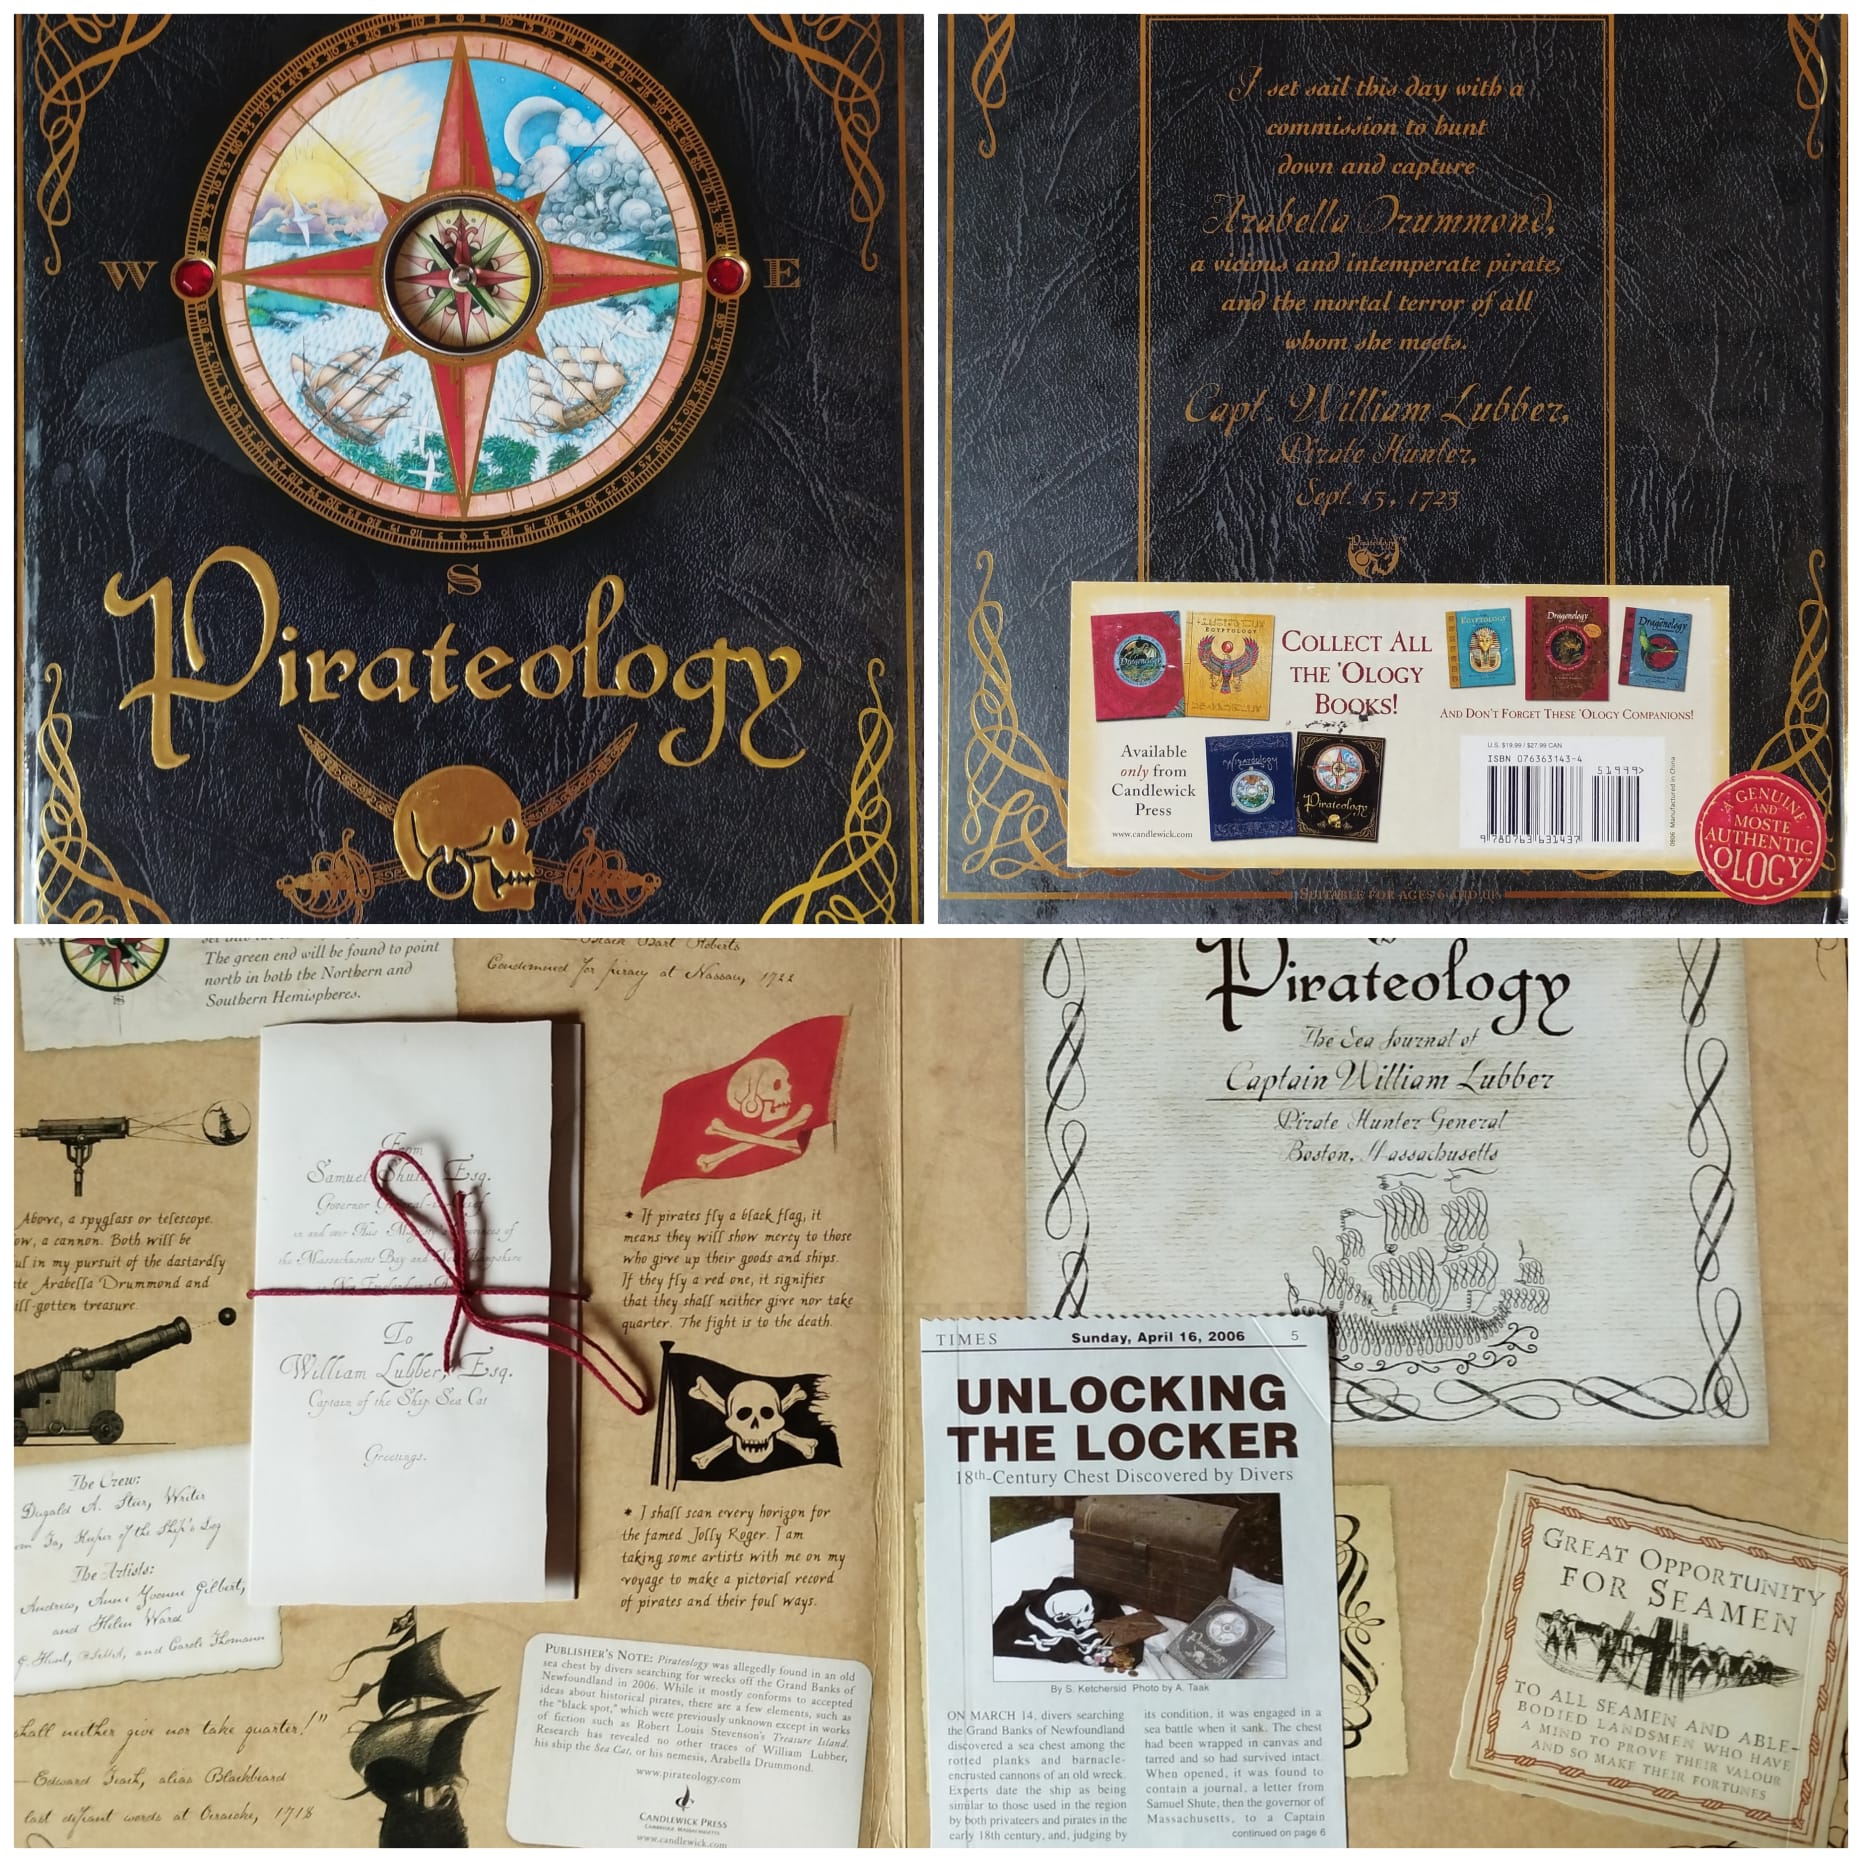 Pirateology Candlewick Press